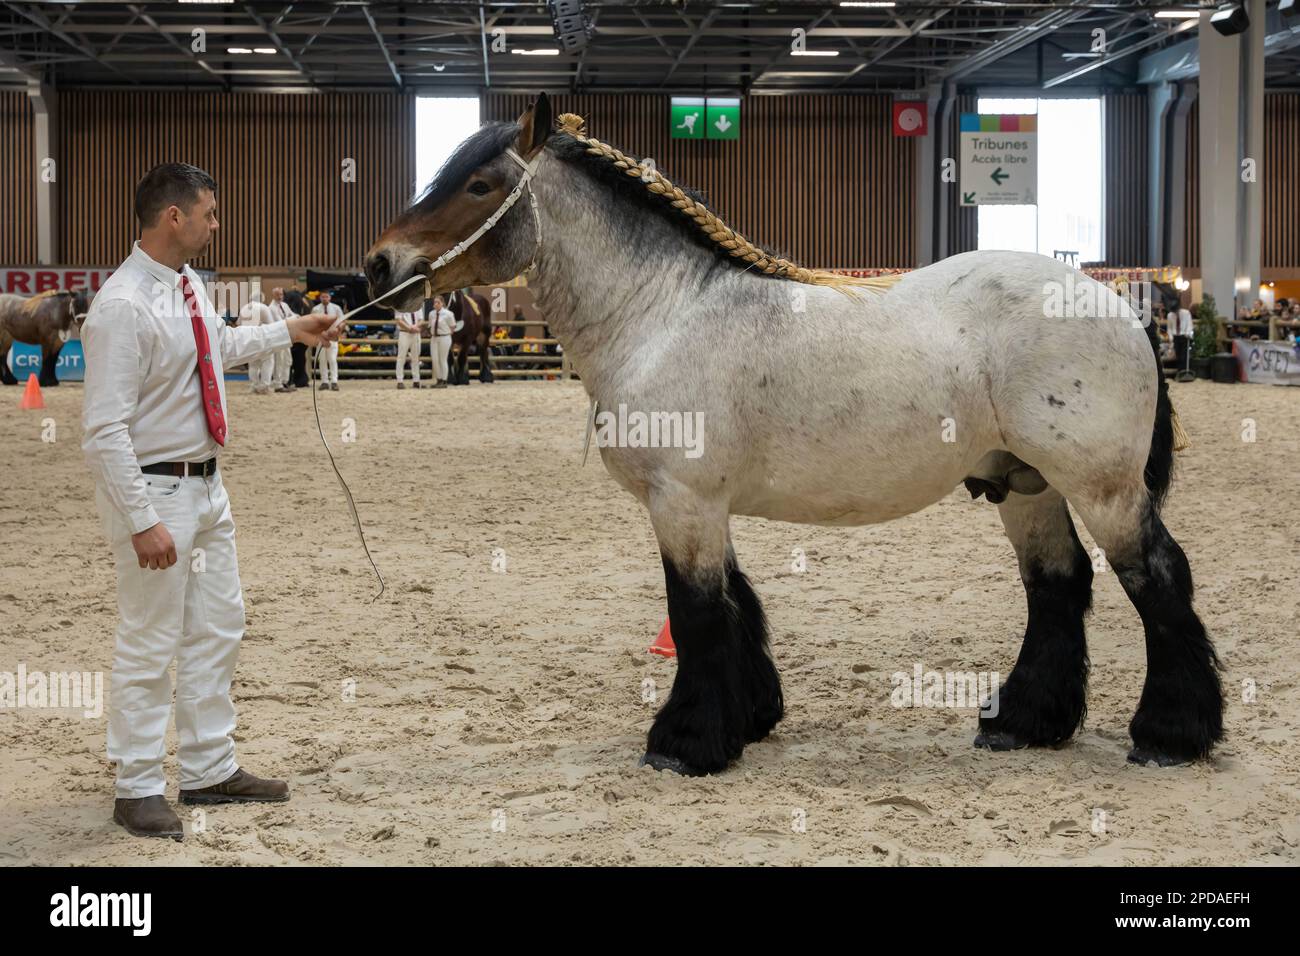 Auxois Horse